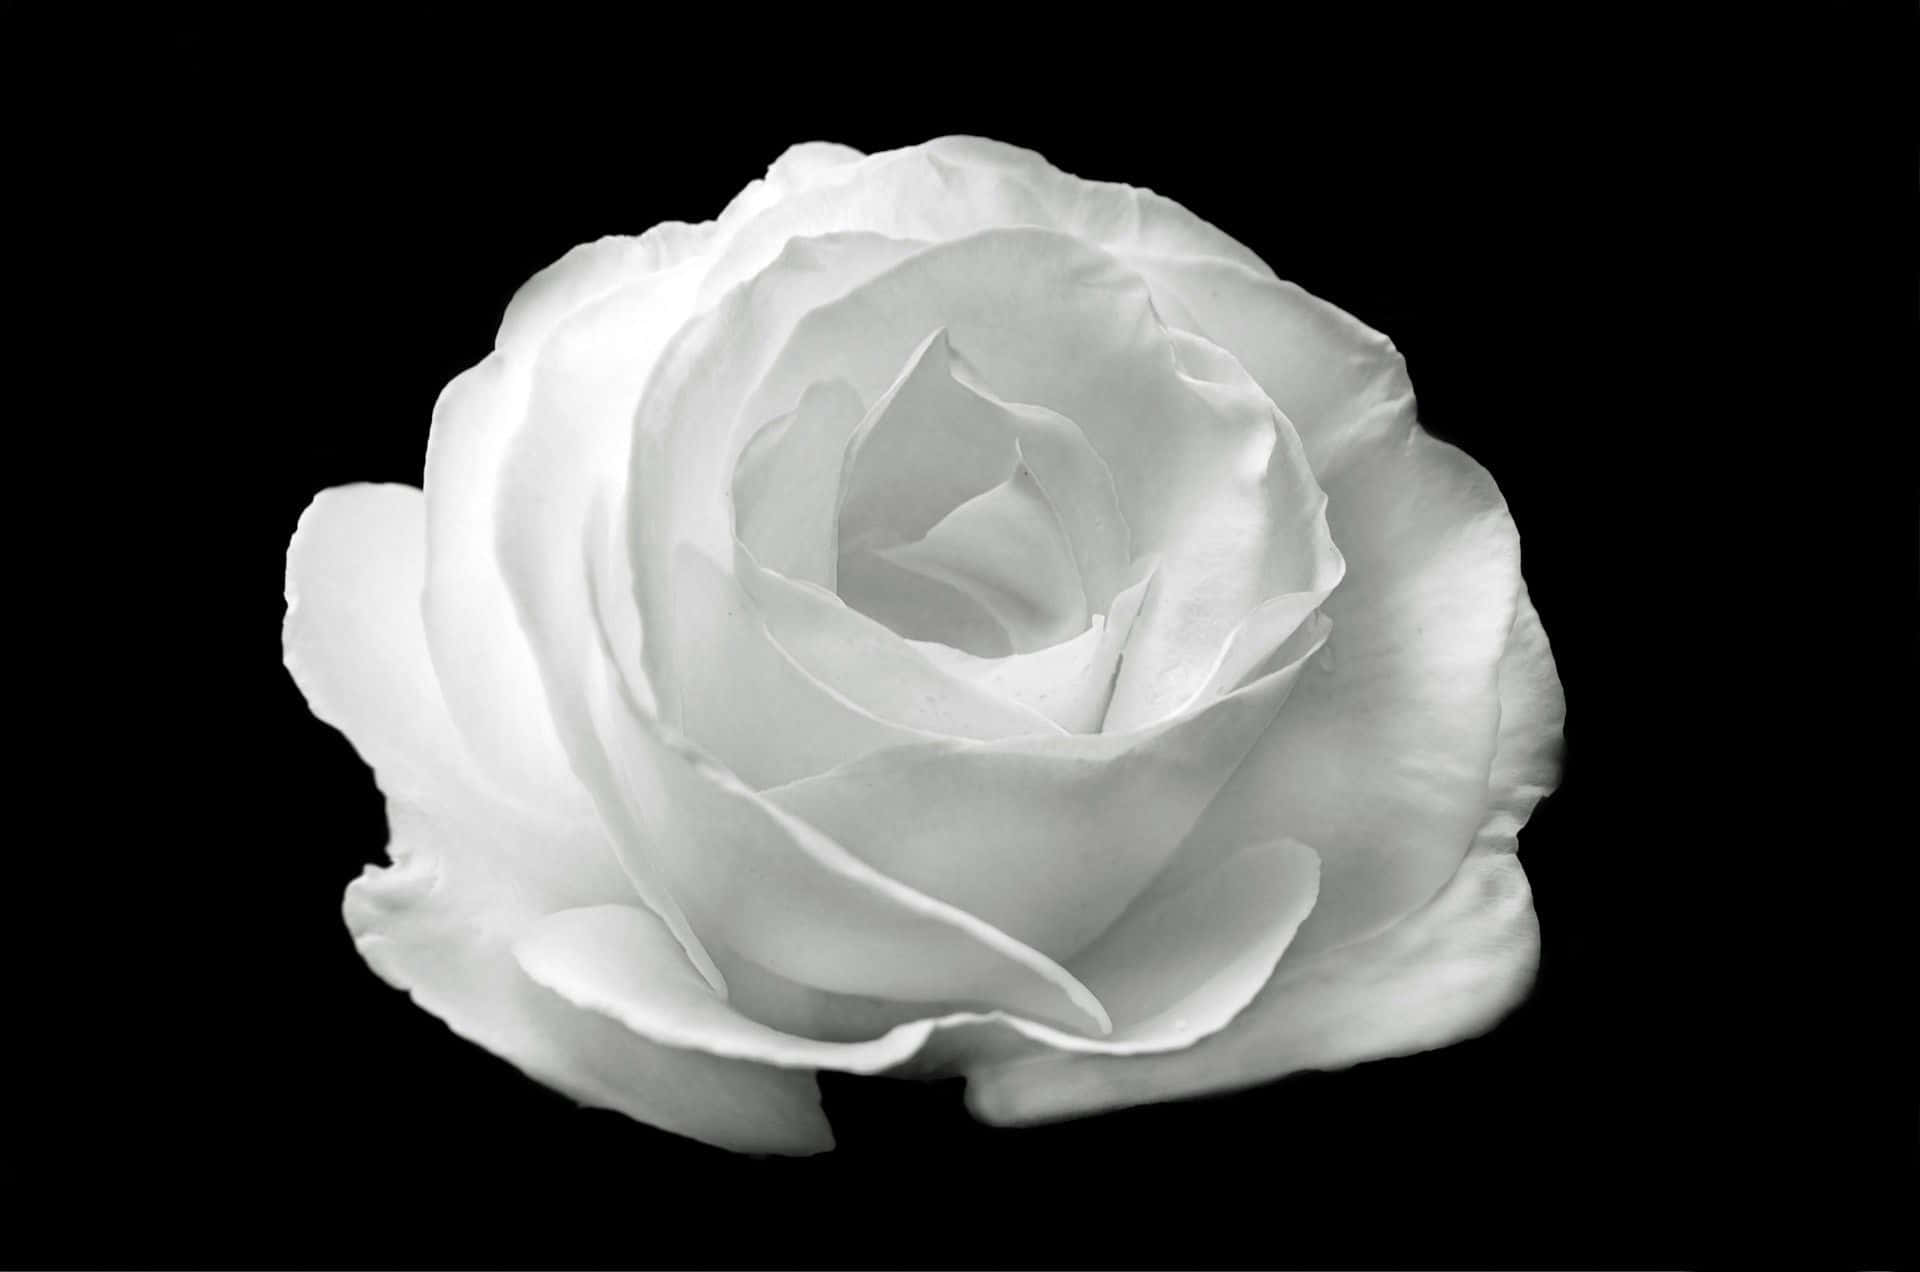 Black And White Aesthetic Flower Wallpaper